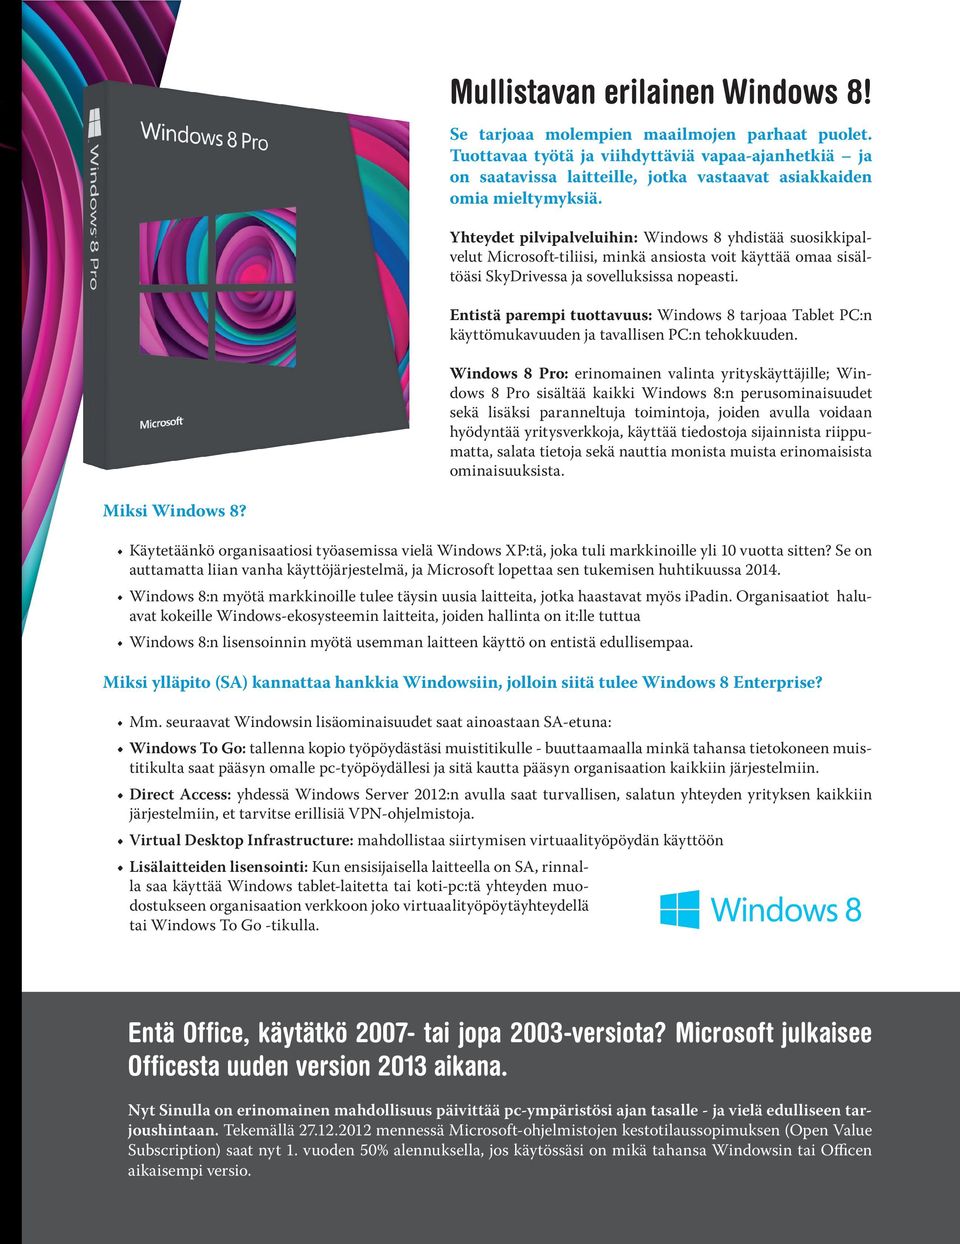 Yhteydet pilvipalveluihin: Windows 8 yhdistää suosikkipalvelut Microsoft-tiliisi, minkä ansiosta voit käyttää omaa sisältöäsi SkyDrivessa ja sovelluksissa nopeasti.